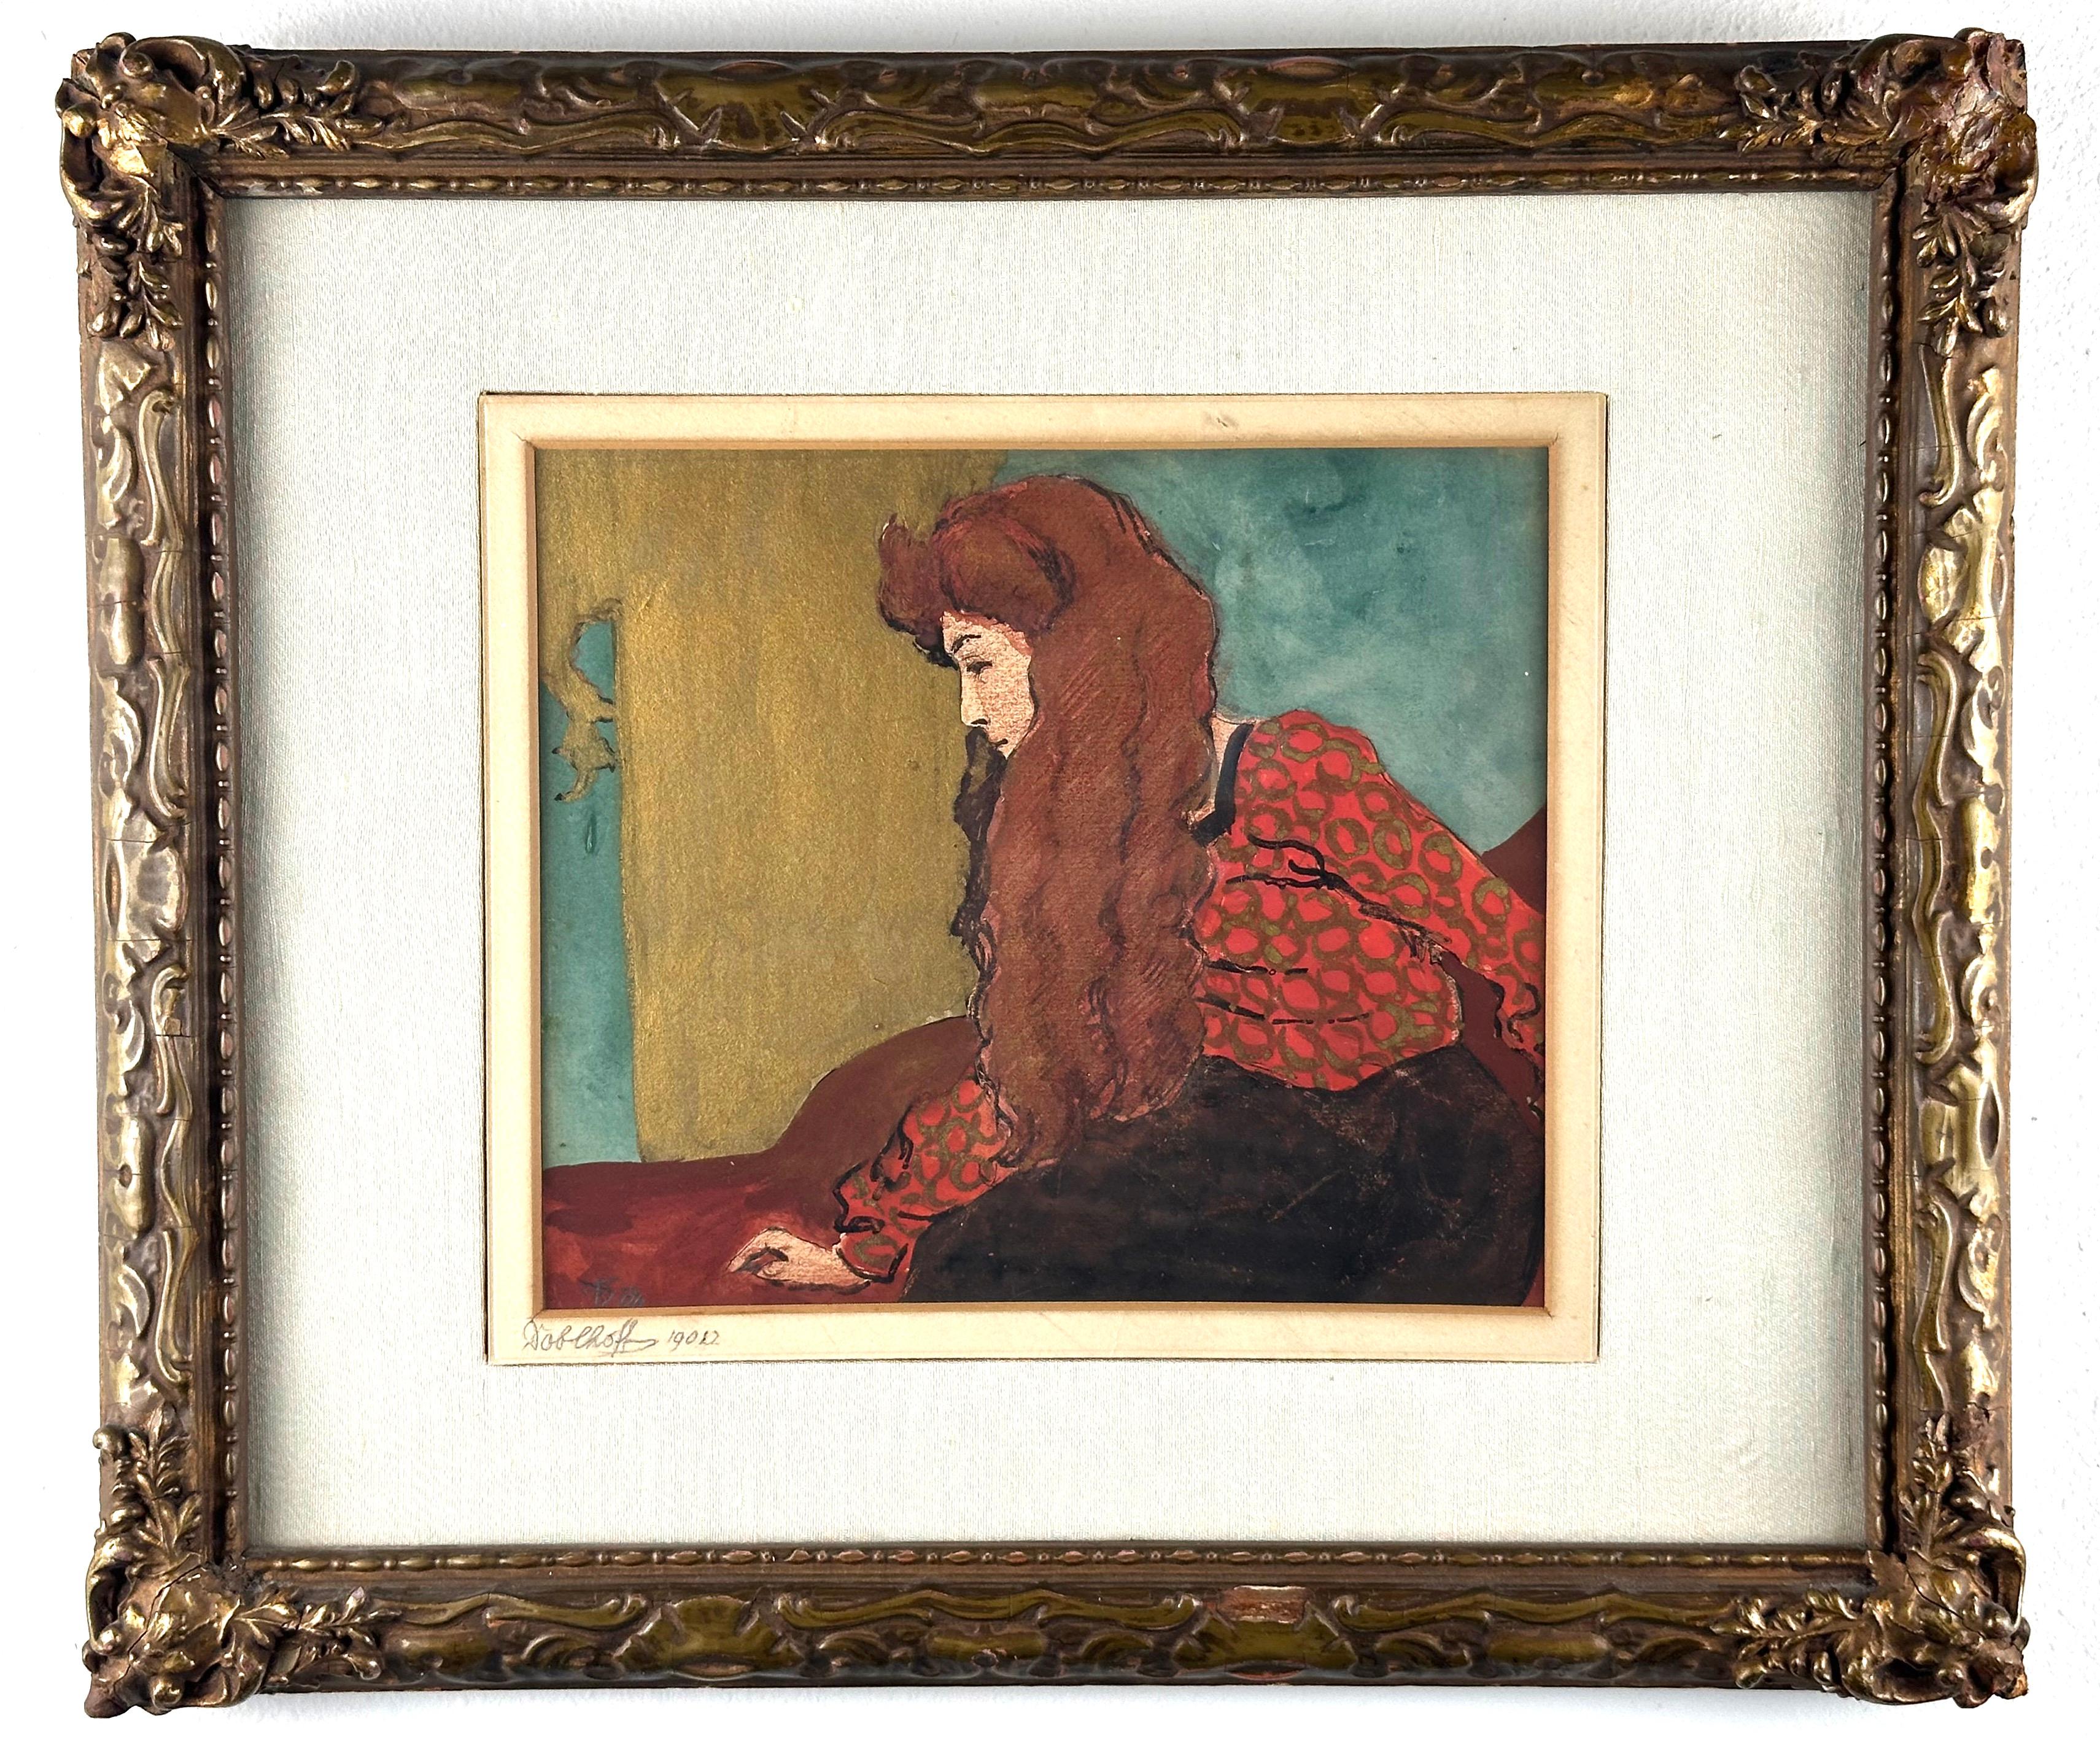 Frau mit rotem Haar  – Painting von Baron Robert Heinrich Freiherr von Doblhoff 